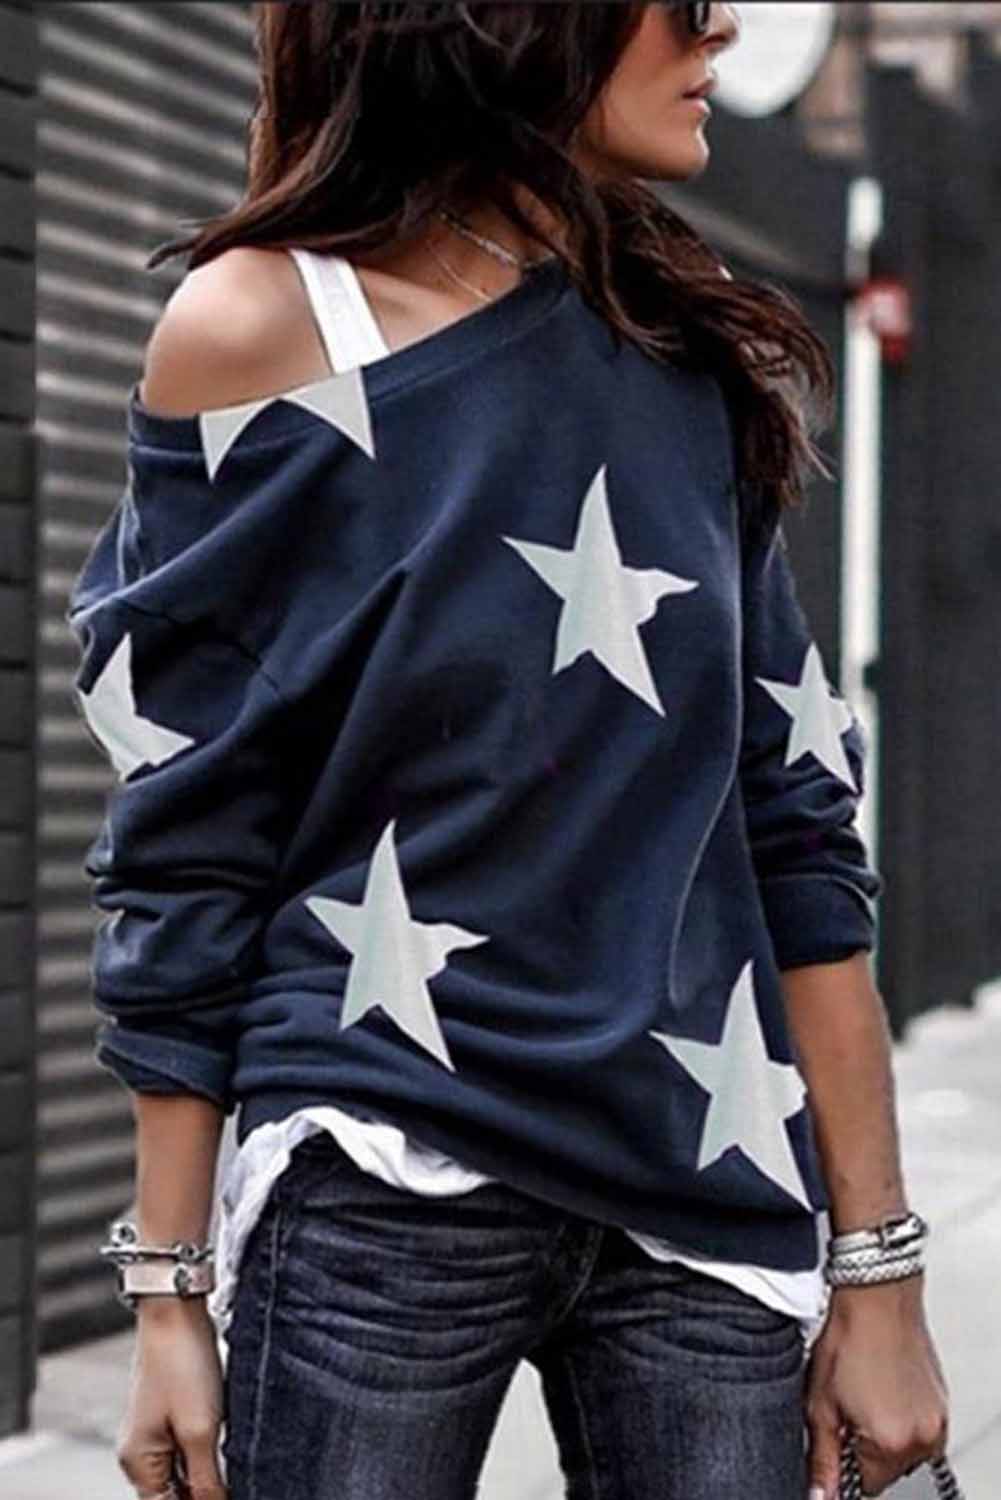 Fashion Five-pointed Star Print Round Neck Black Sweatshirt